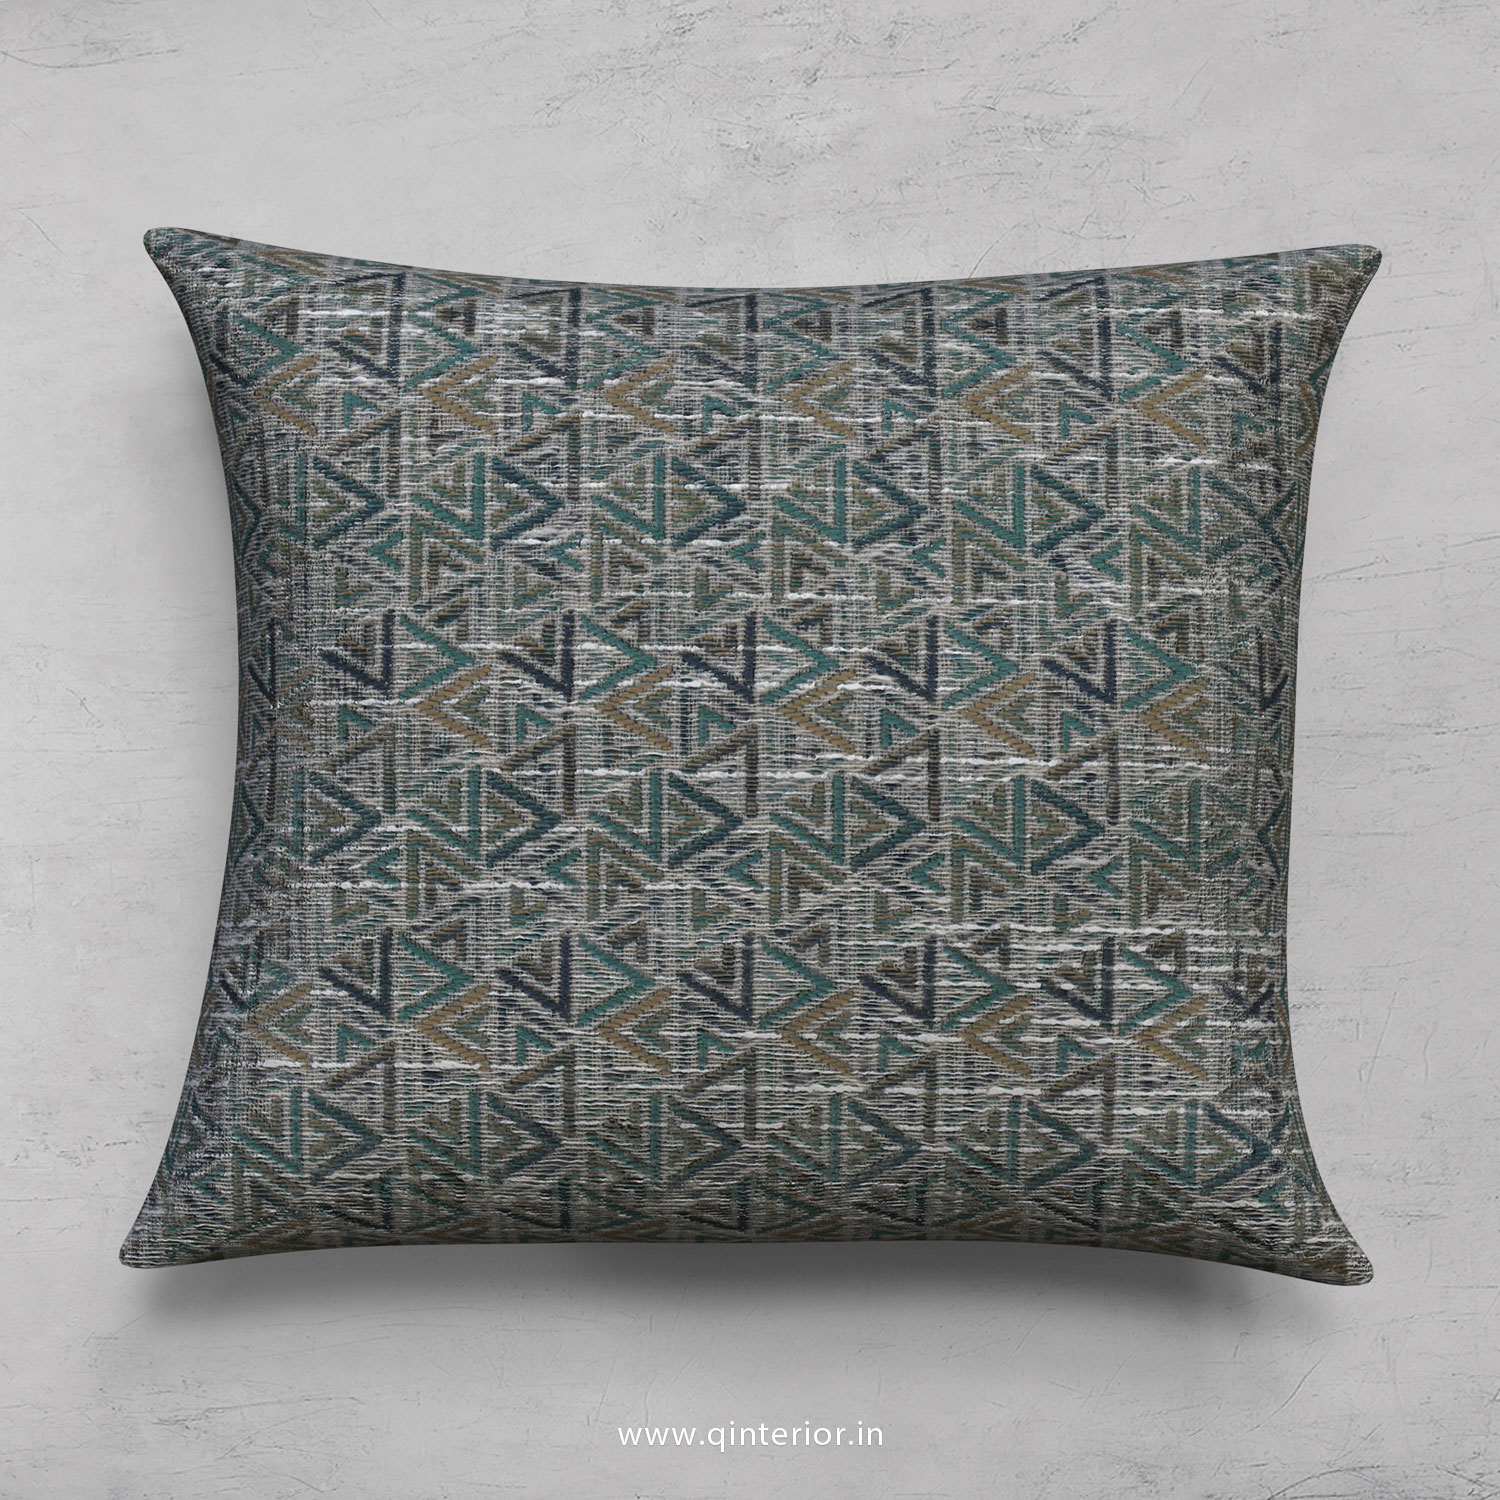 Cushion With Cushion Cover in Jacquard - CUS001 JQ25